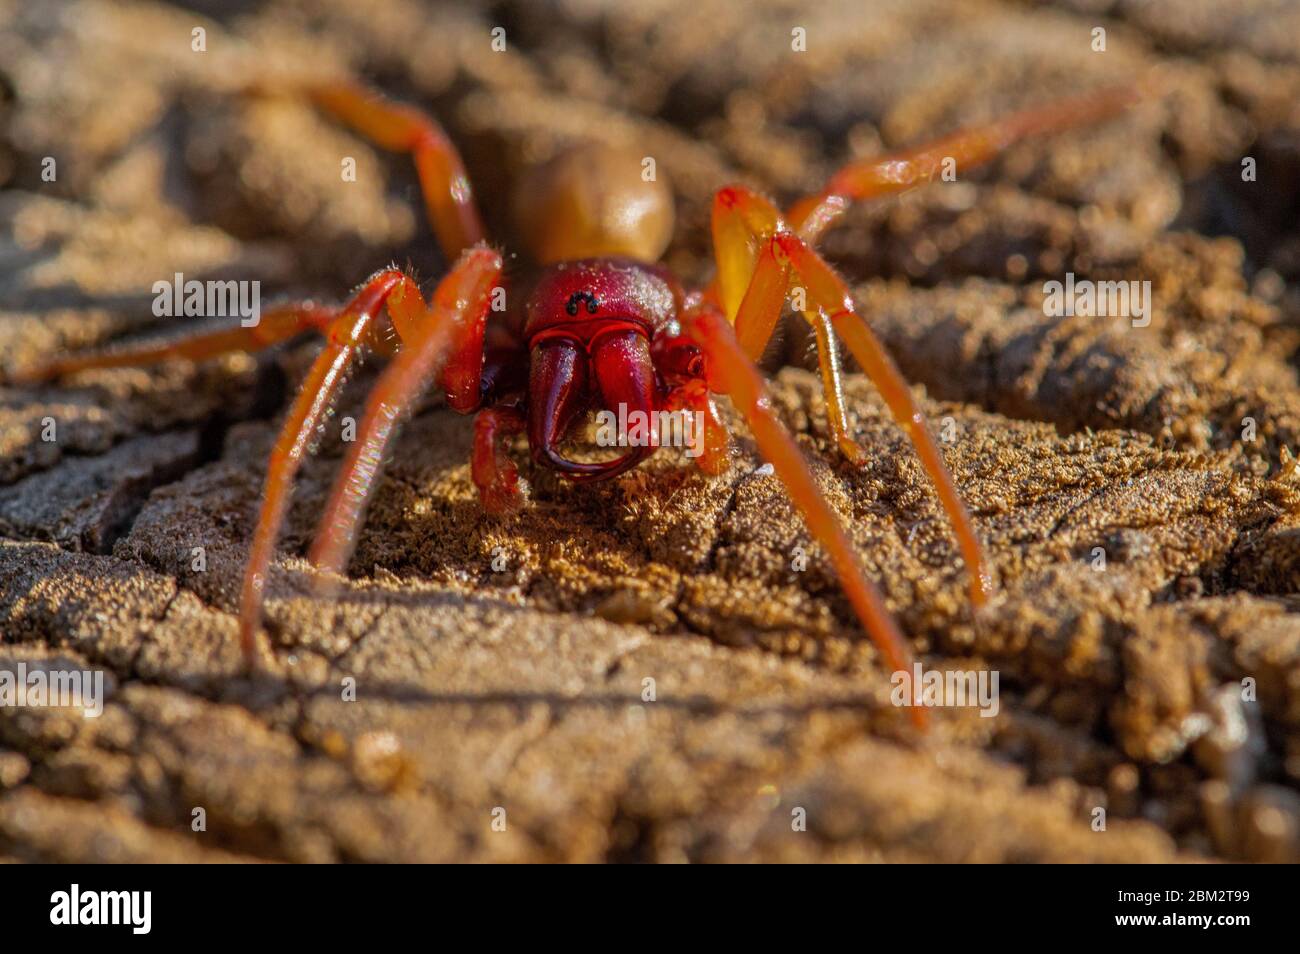 Woodlouse spider Stock Photo